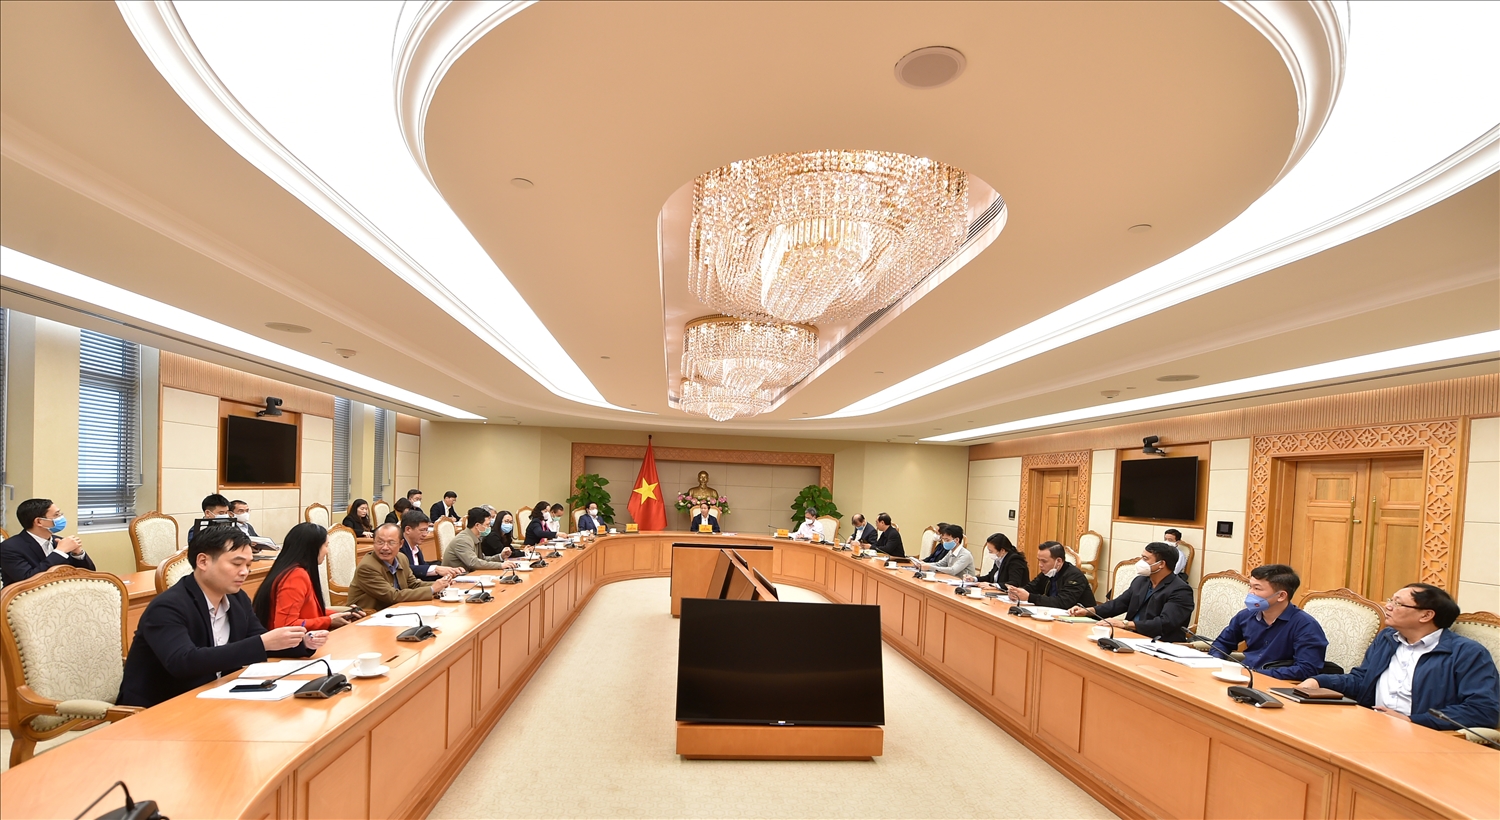 Phó Thủ tướng Lê Văn Thành: Việc tìm ra nguyên nhân và tập trung chỉ đạo để giải quyết vấn đề này là rất cần thiết bởi ảnh hưởng đến hàng chục triệu người dân. Ảnh: VGP/Đức Tuân